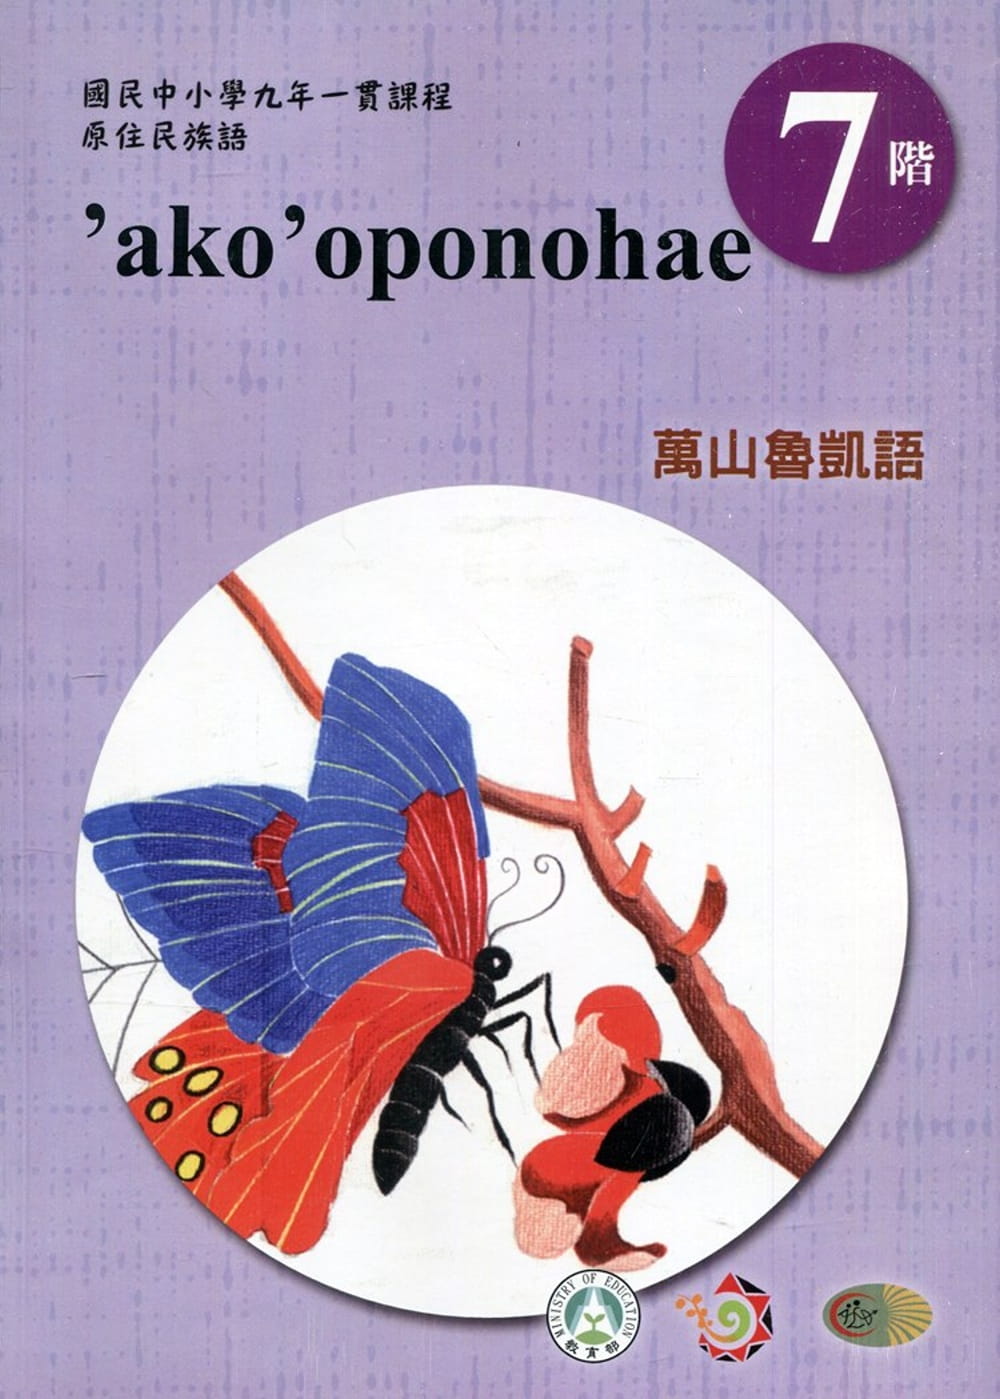 原住民族語萬山魯凱語第七階學習手冊(附光碟)2版